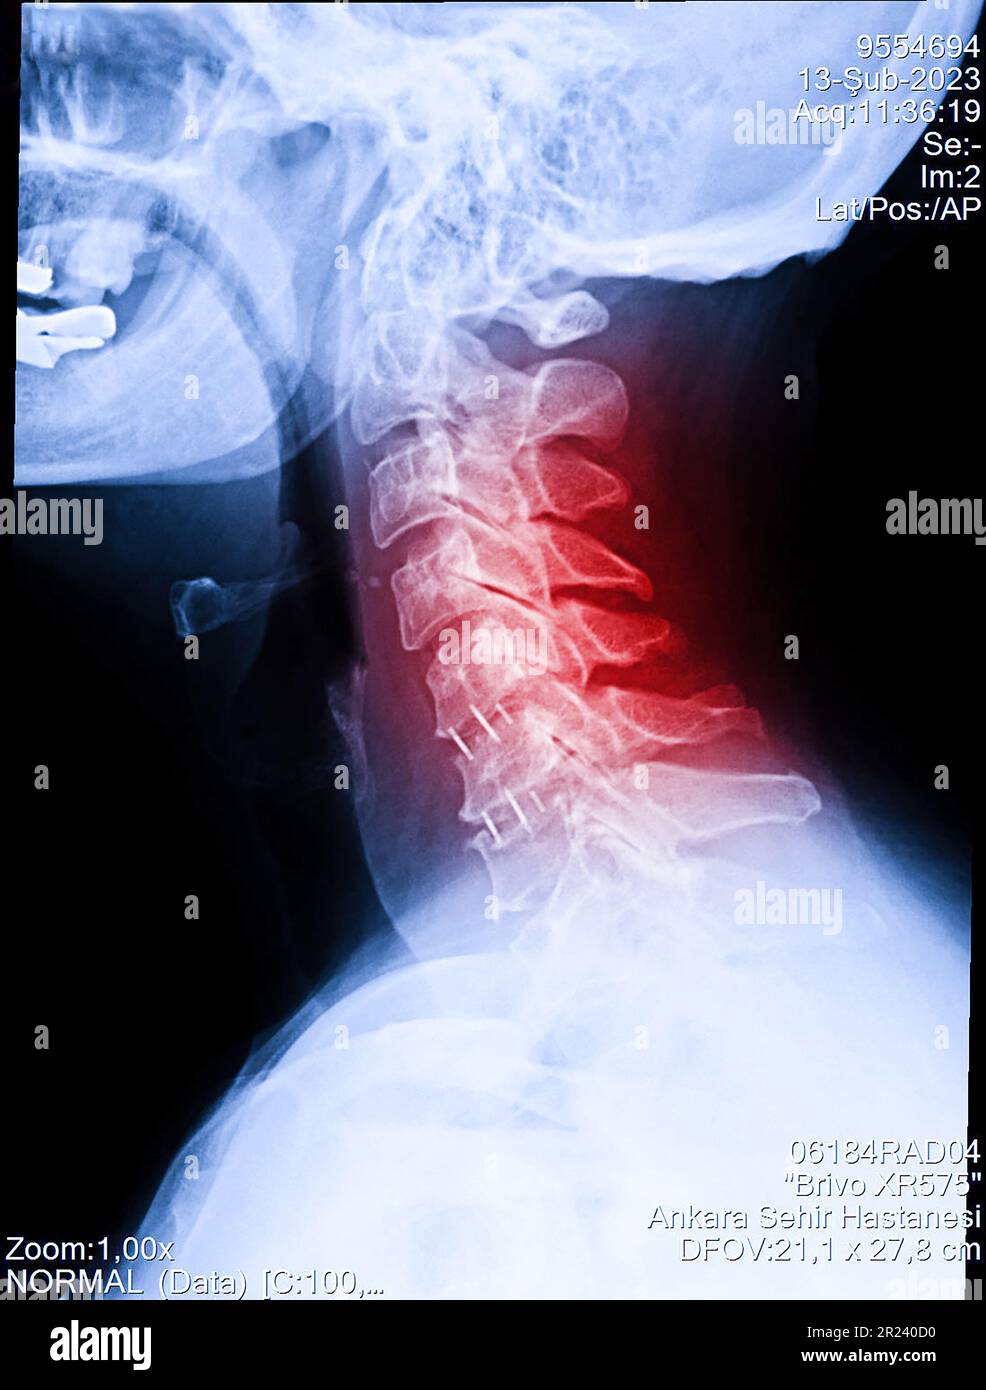 Vista radiografica del collo e della colonna cervicale. Immagine della radiografia di pazienti con dolore al collo, compressione della radice nervosa, intorpidimento al polso o all'aletta della mano del braccio Foto Stock